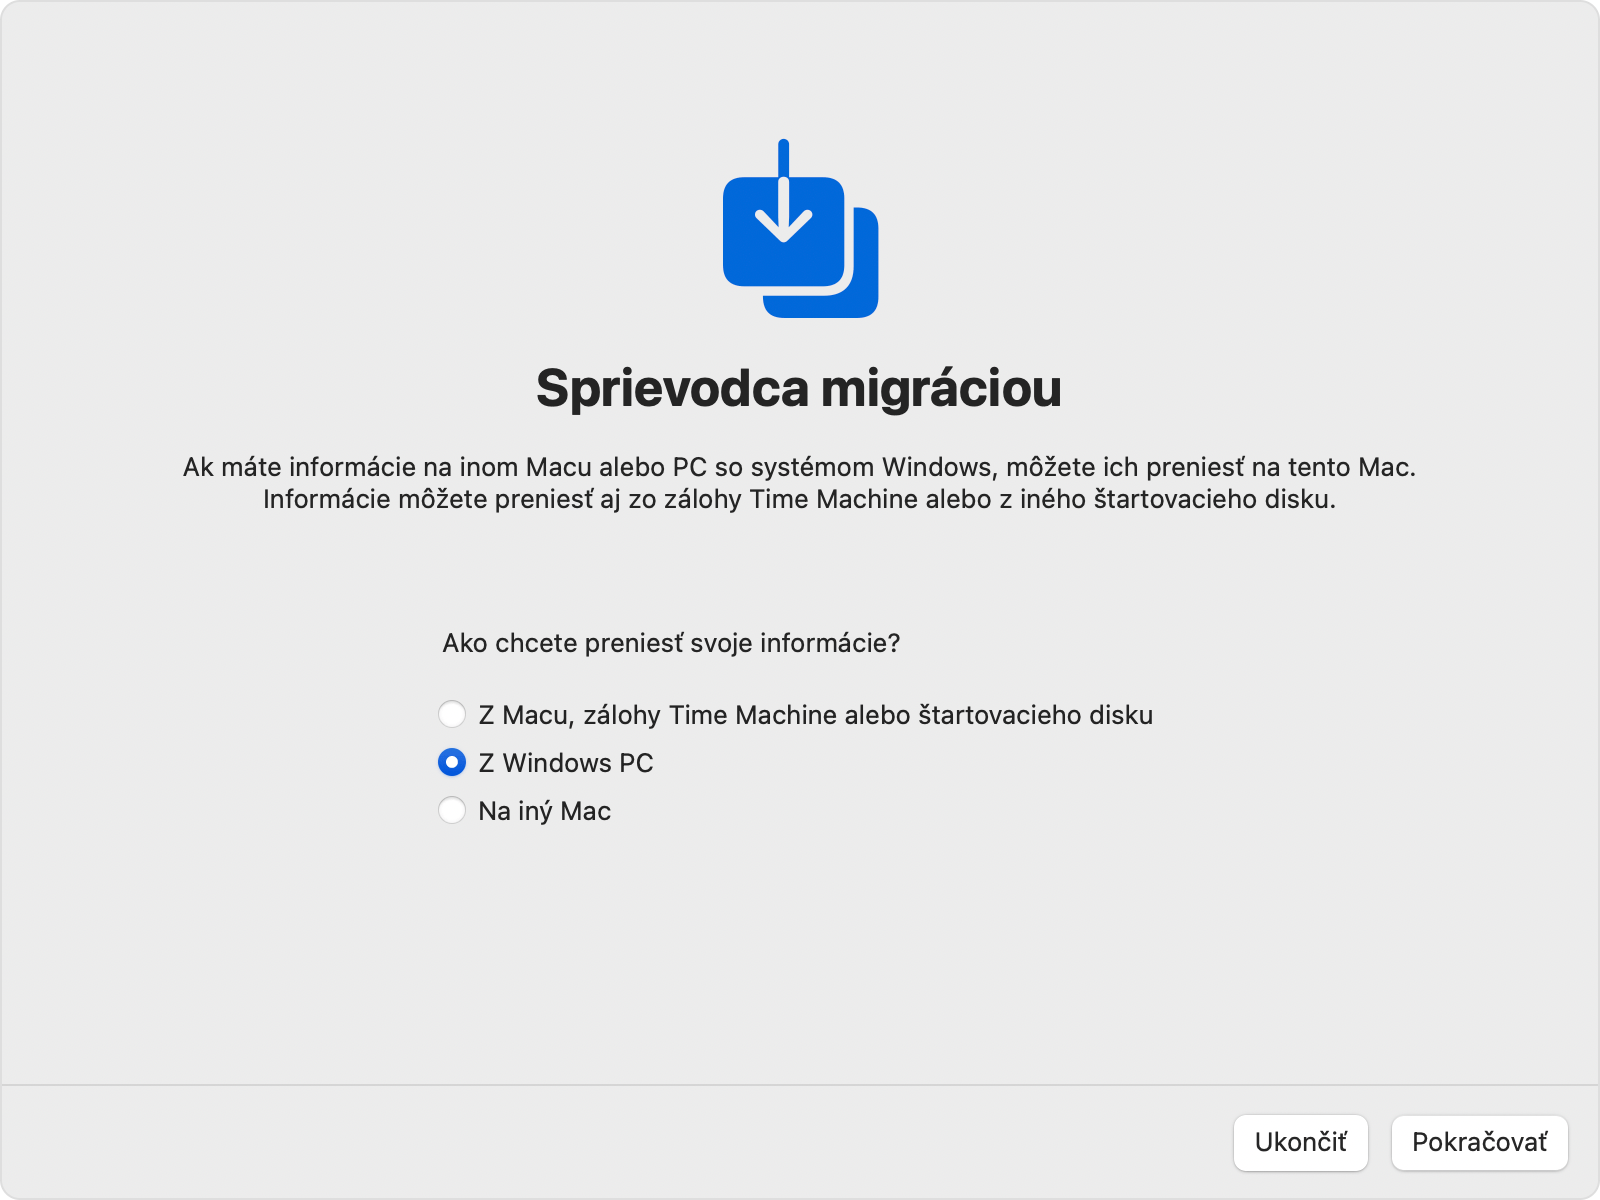 Sprievodca migráciou na Macu: Prenos „Z Windows PC“